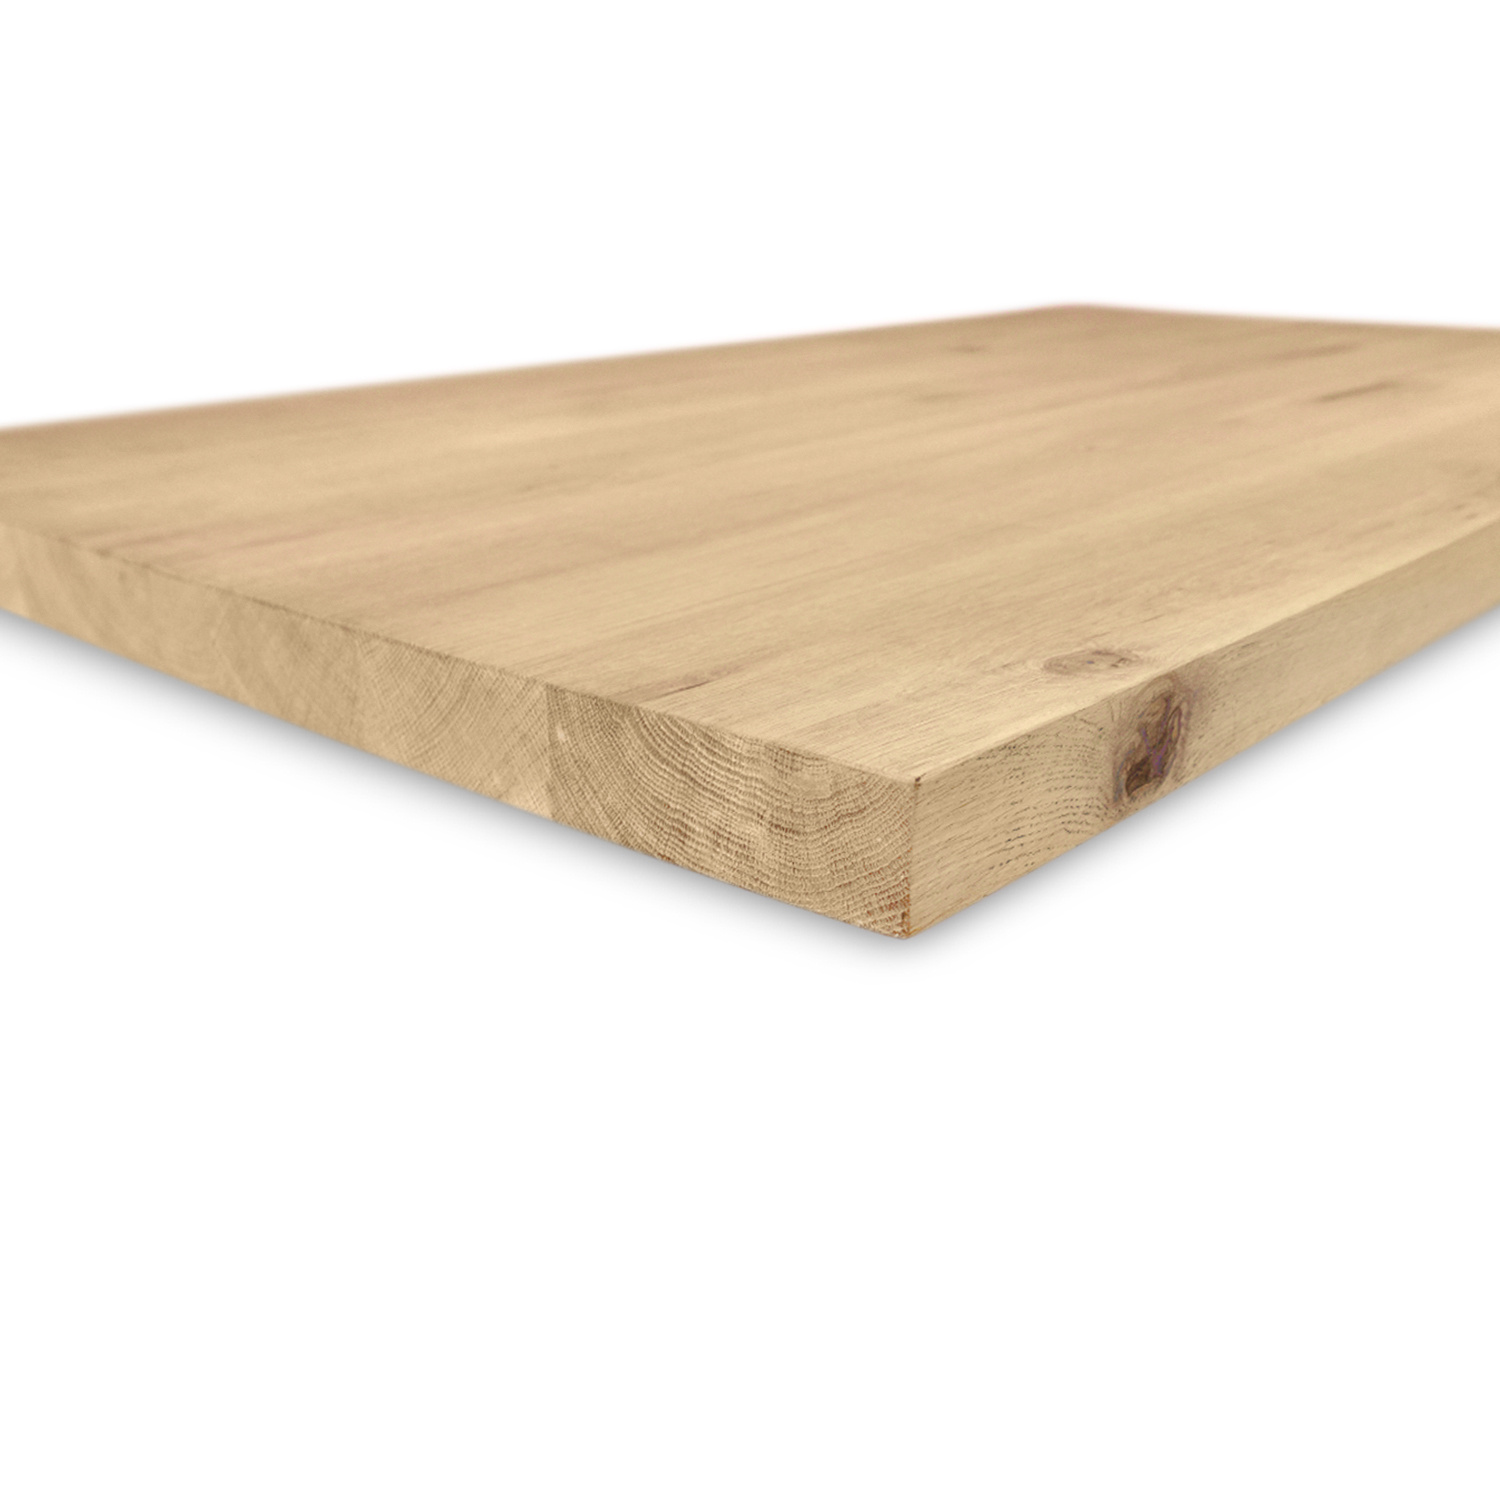  Tischplatte Wildeiche nach Maß - 3 cm dick (1-Schicht) - XXL Lamellen (14-20 cm breit) - Asteiche (rustikal) - verleimt & künstlich getrocknet (HF 8-12%) - 40-117x80-300 cm